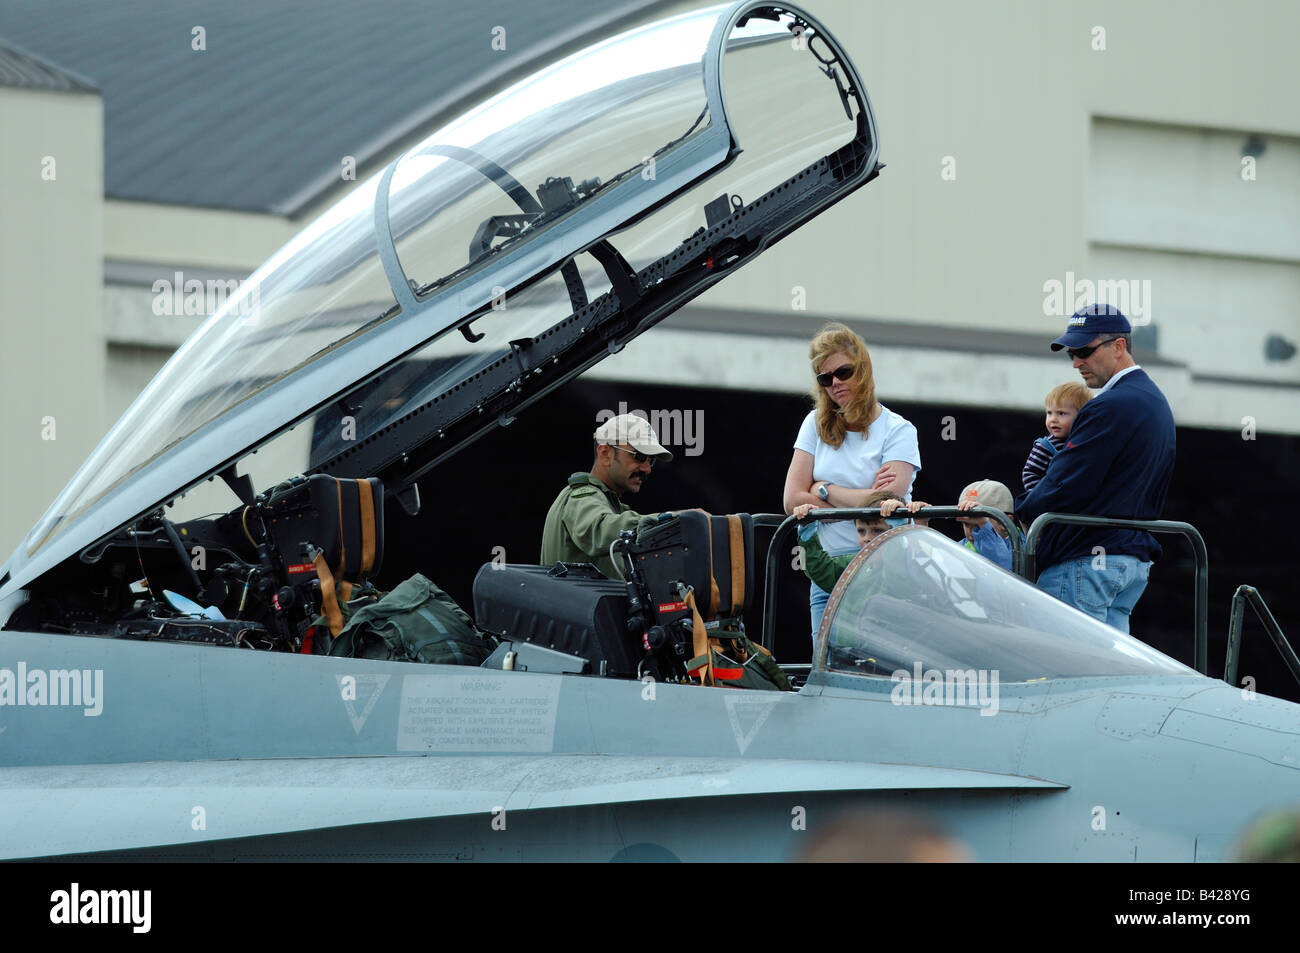 Amerikanische Kampfjet f-18 Hornet Cockpit mit pilot und amerikanische  Familie, Anchorage Luftfahrtausstellung, Alaska, Usa Stockfotografie - Alamy